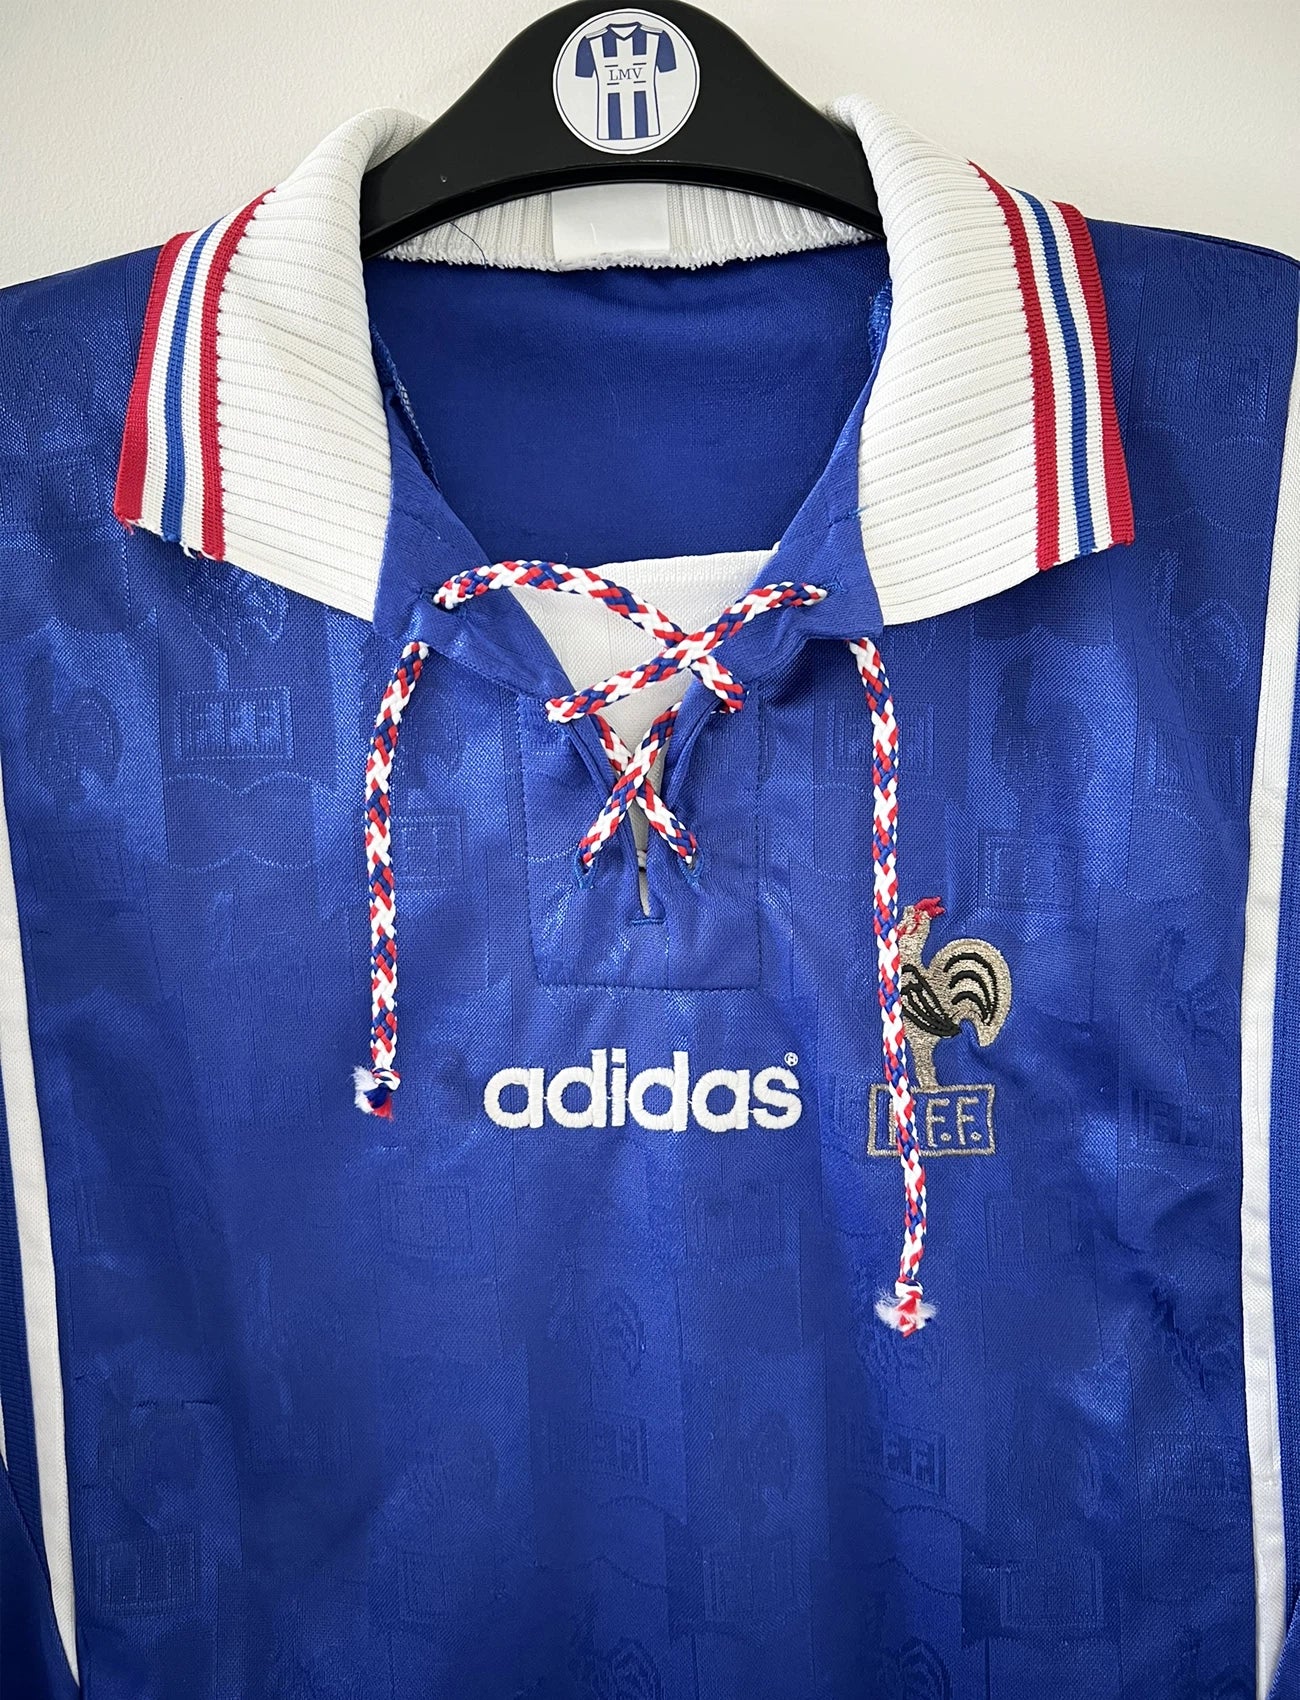 Maillot de foot vintage domicile de l'équipe de france 1996 de couleur bleu blanc et rouge. On peut retrouver l'équipementier adidas et le coq sans étoile. Il s'agit d'un maillot authentique d'époque.